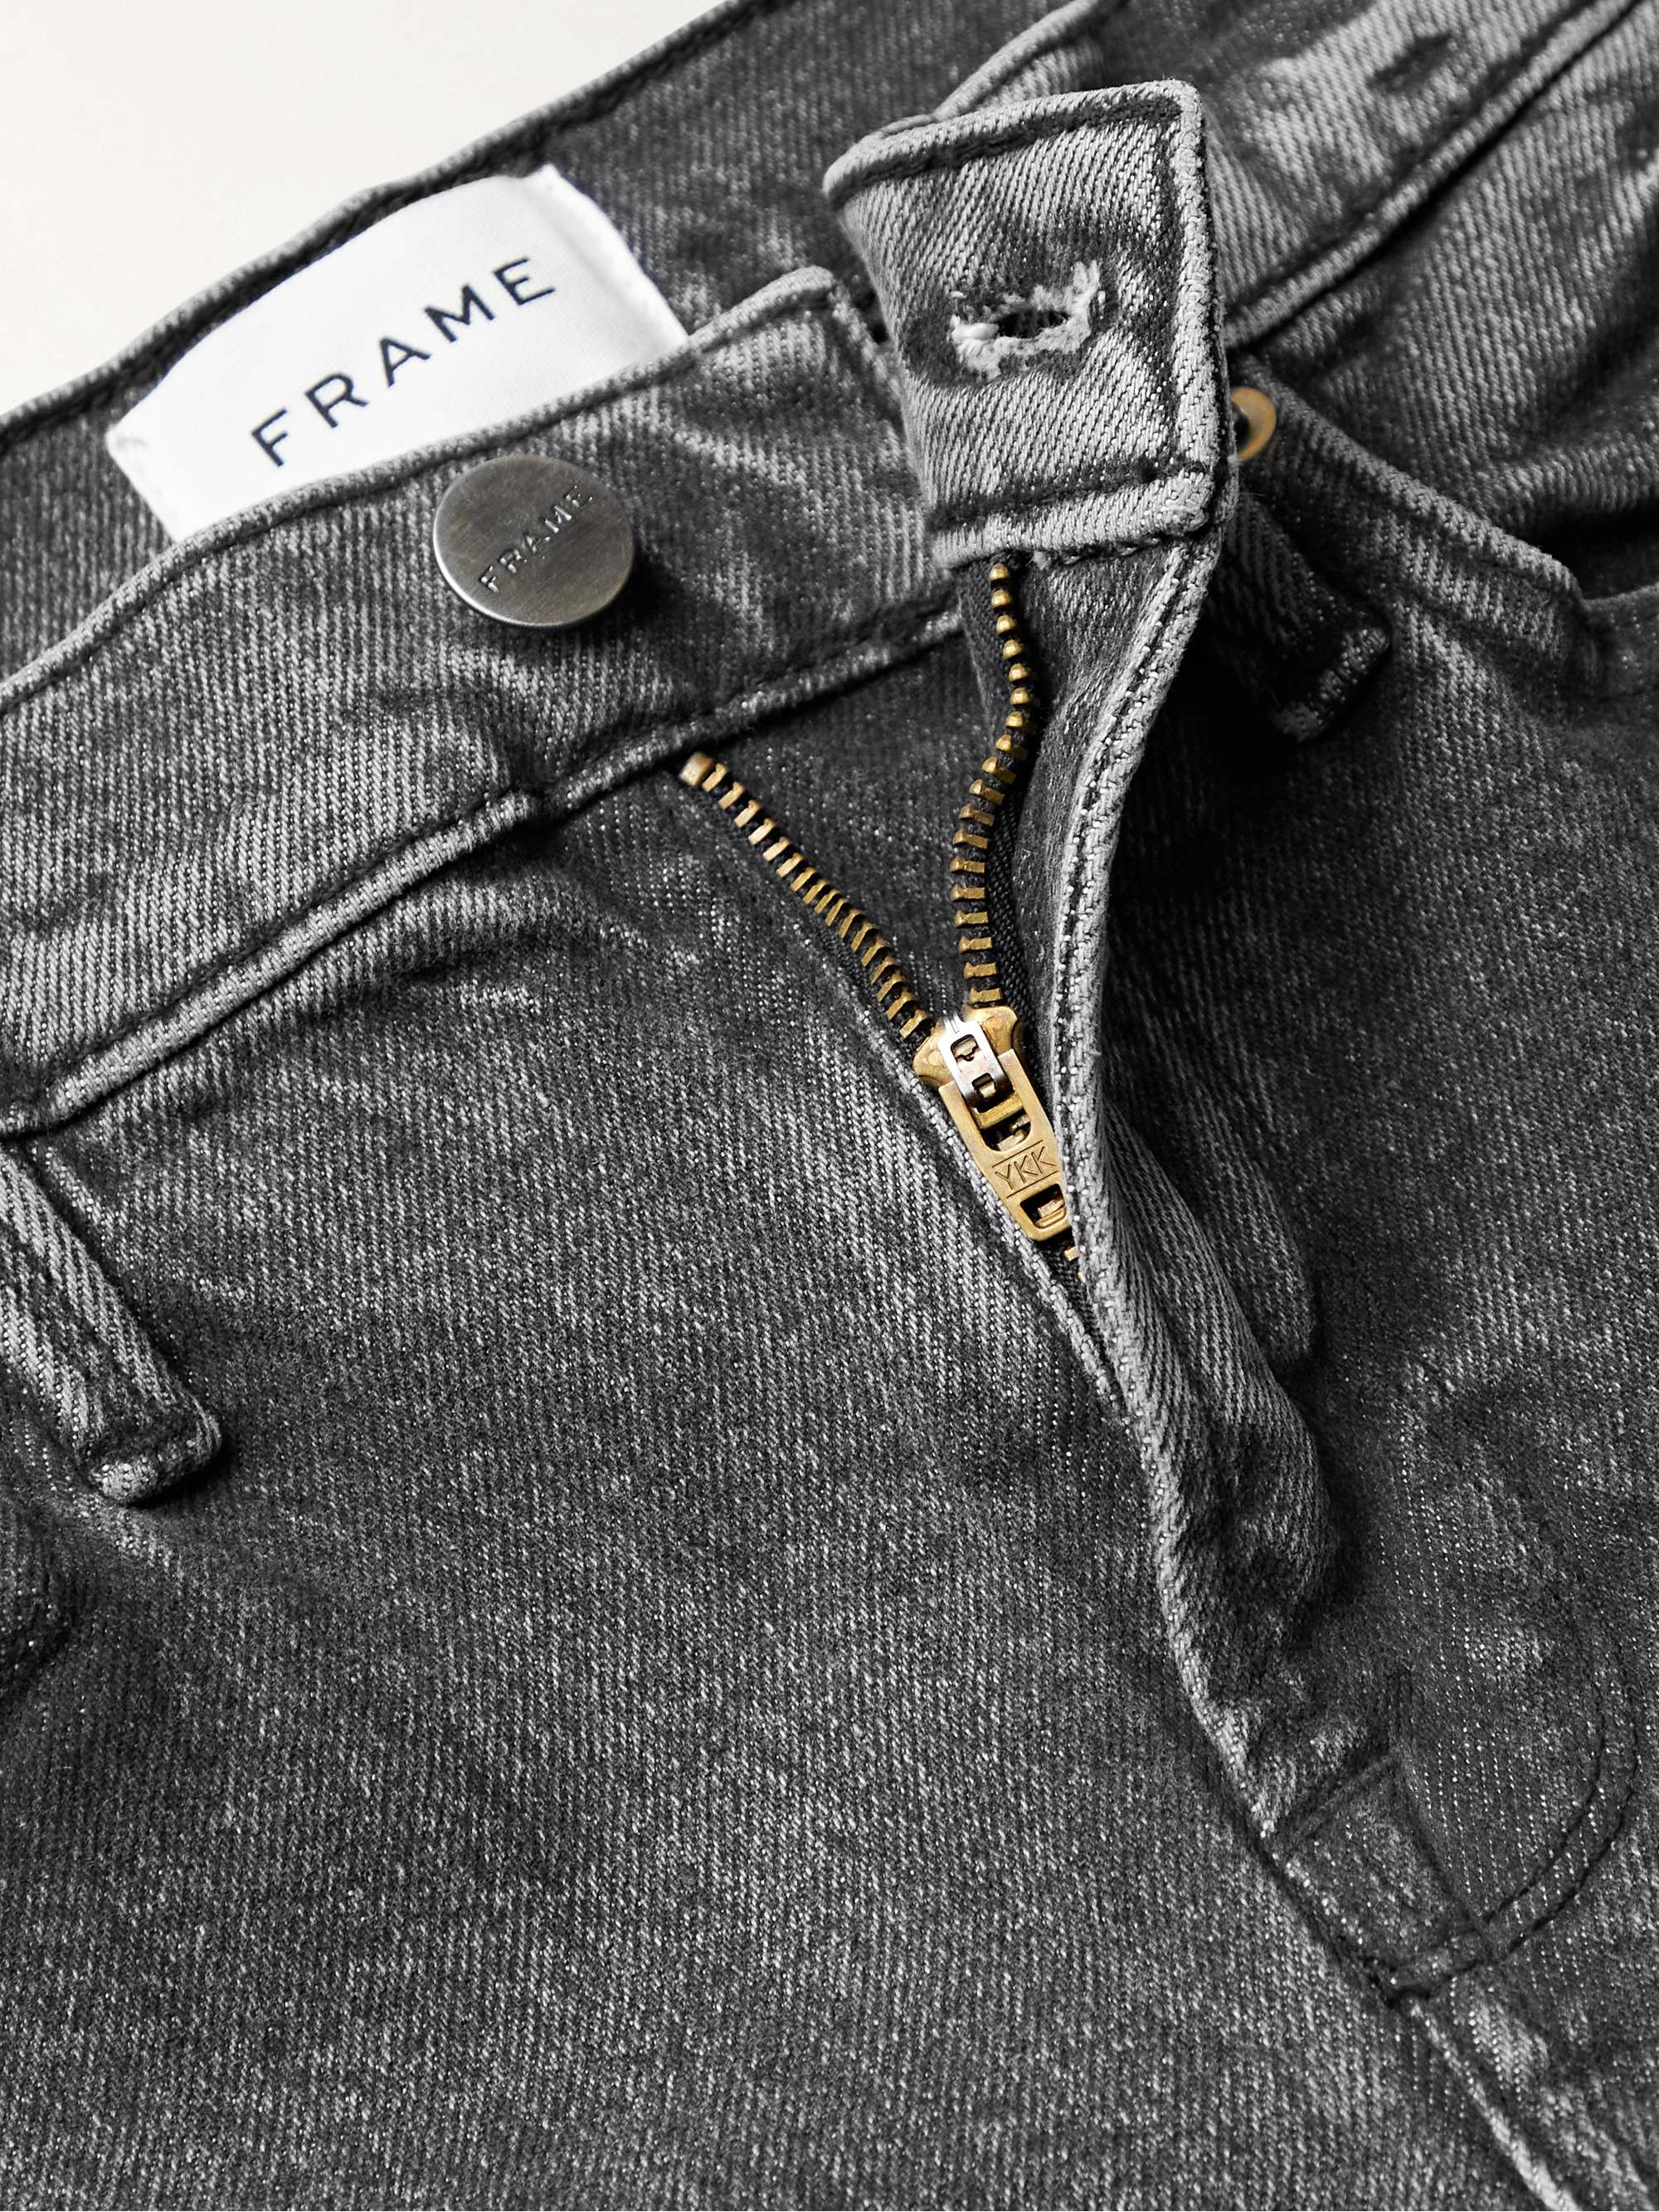 FRAME L'Homme Skinny-Fit Jeans